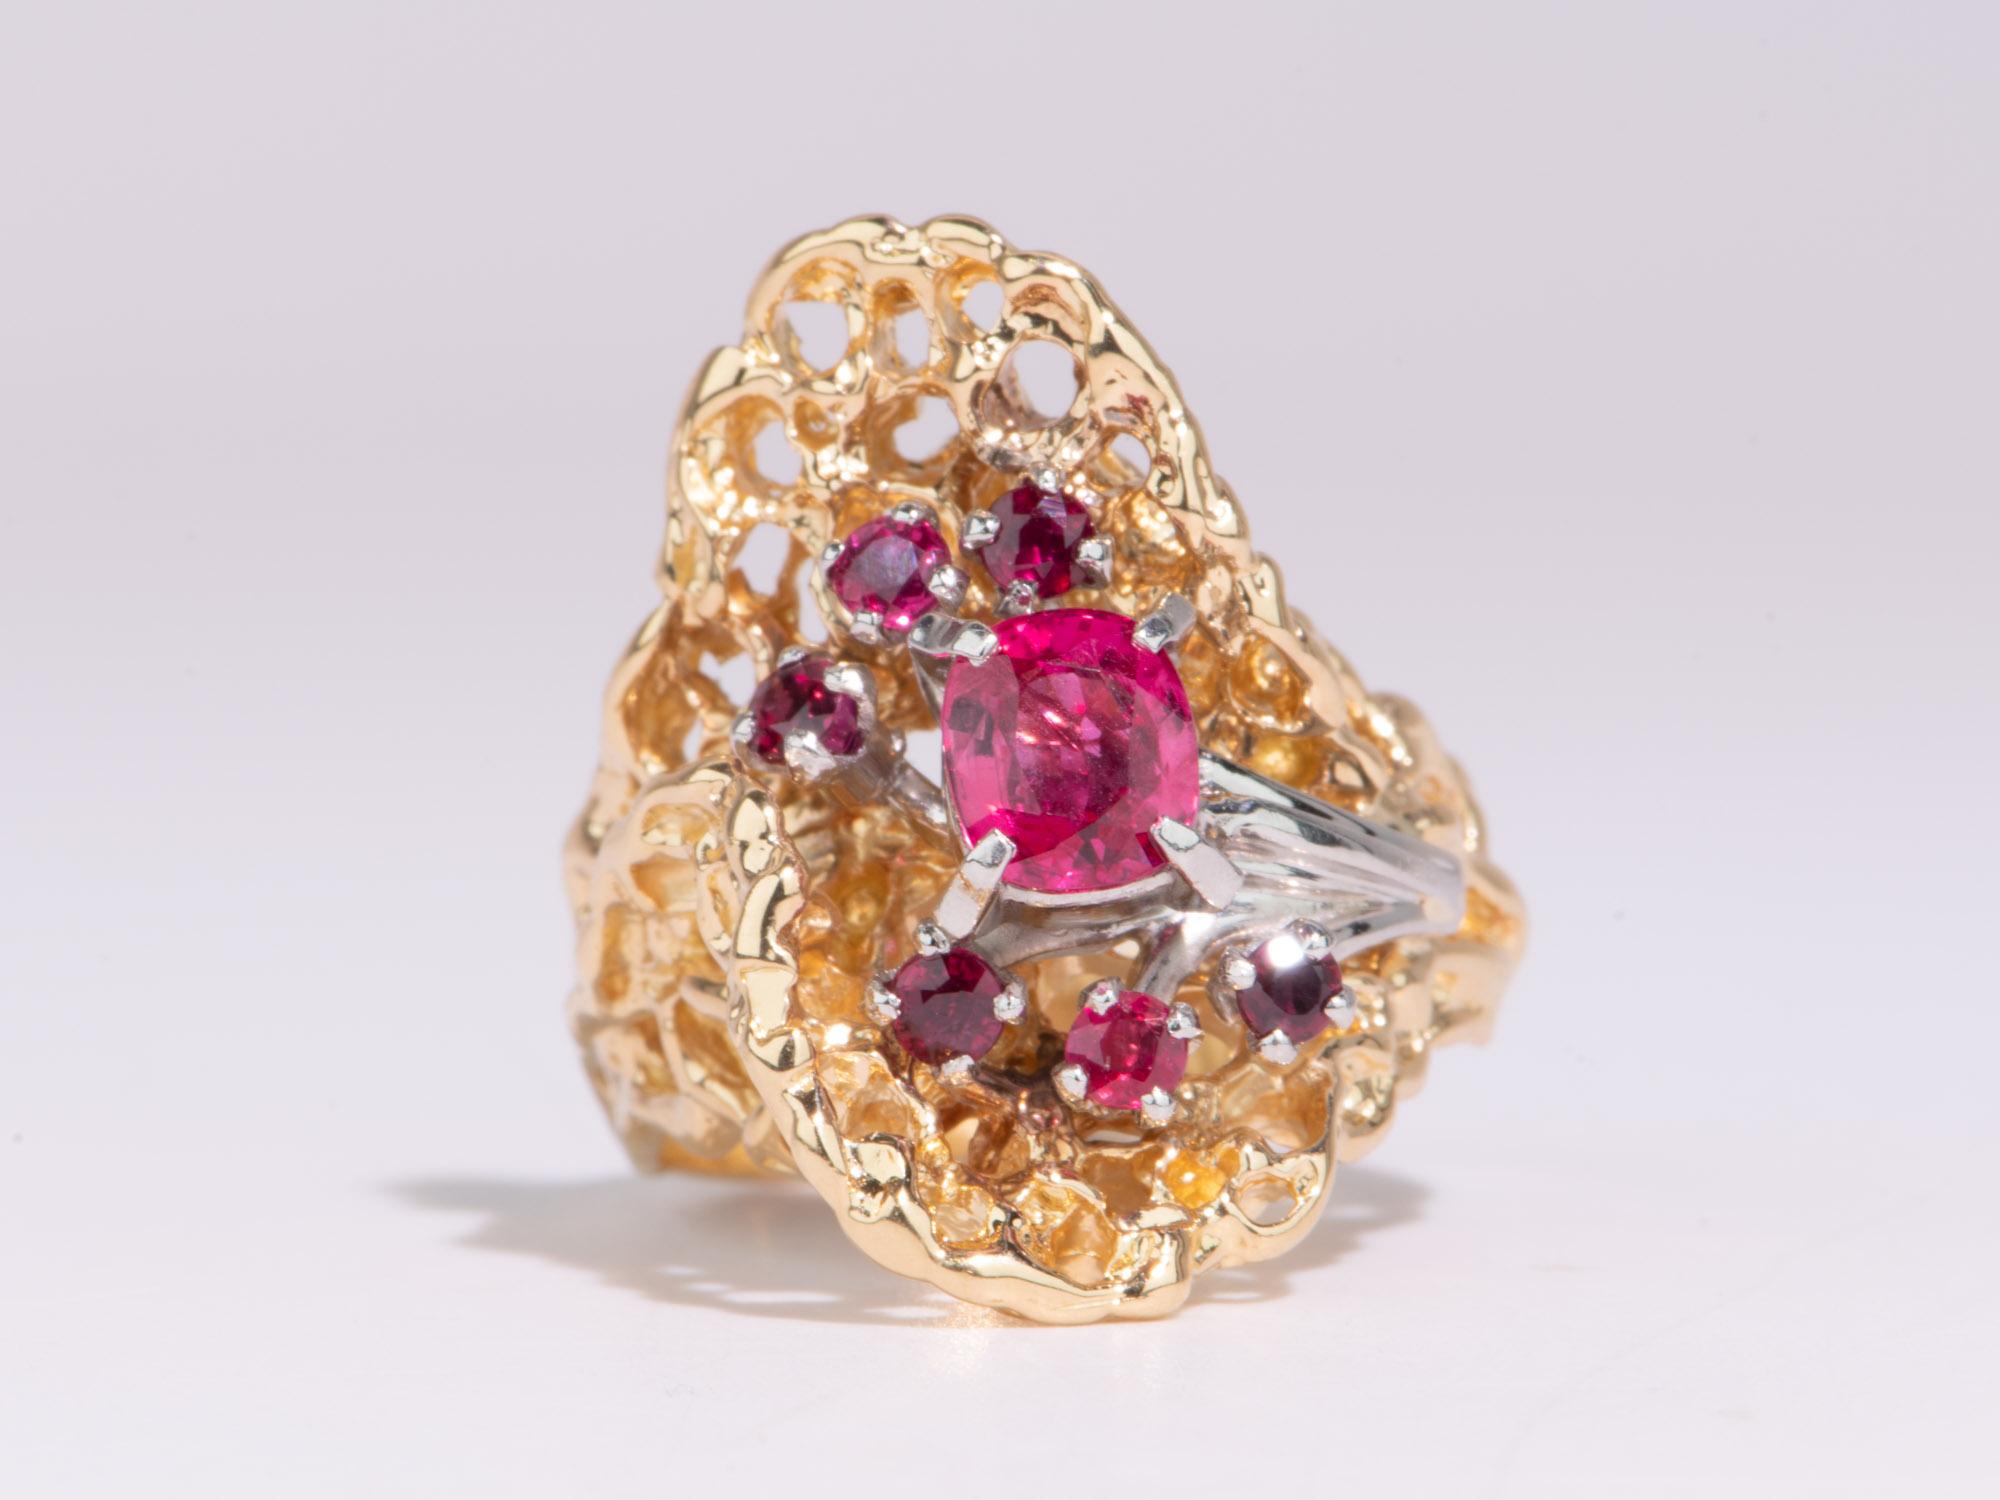 Zeigen Sie Ihren einzigartigen Stil mit diesem Statement-Ring! Mit seinem organischen Design und den leuchtend roten und rosafarbenen Edelsteinen ist dieses einzigartige Stück ein echter Hingucker. Glänzen Sie im Rampenlicht mit diesem exquisiten